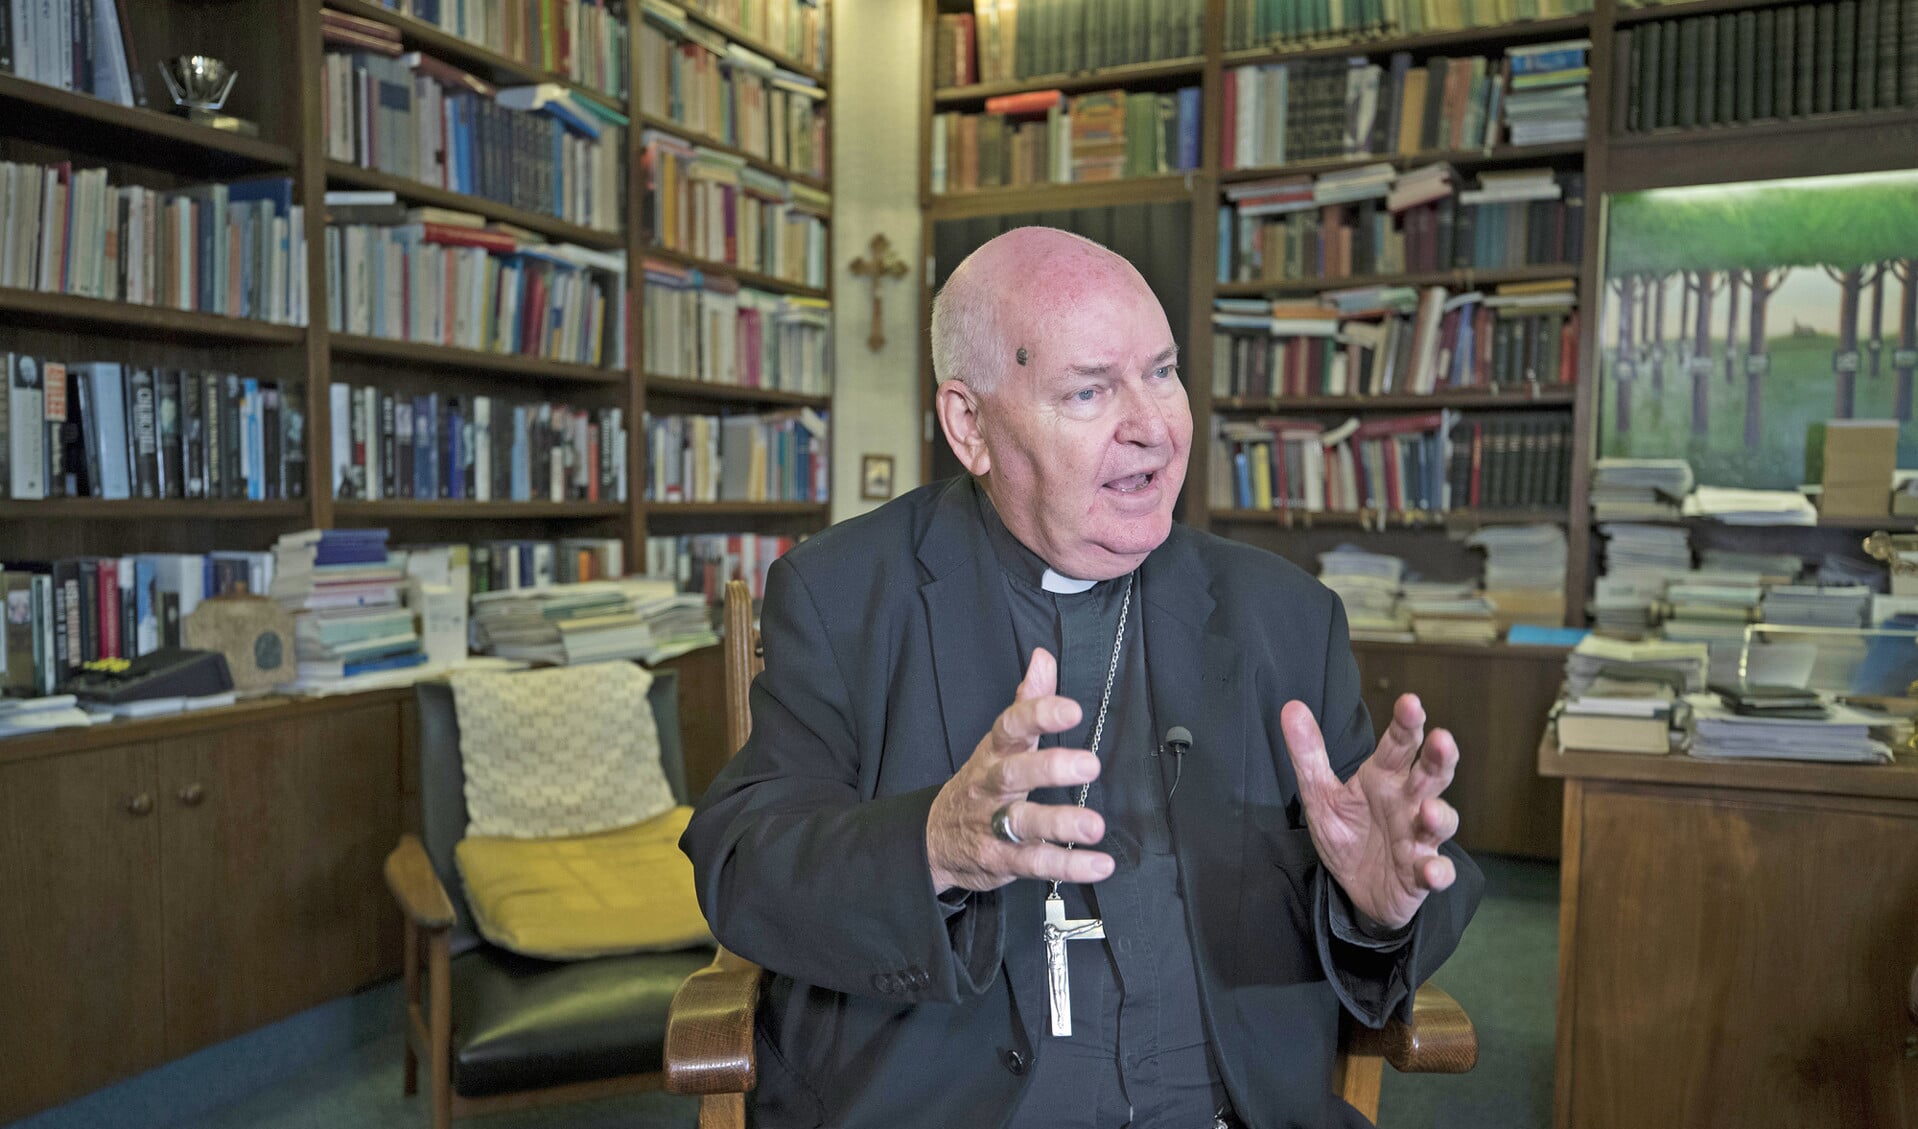 Bisschop Frans Wiertz heeft vanwege zijn slechte gezichtsvermogen al vroegtijdig gevraagd om een opvolger.